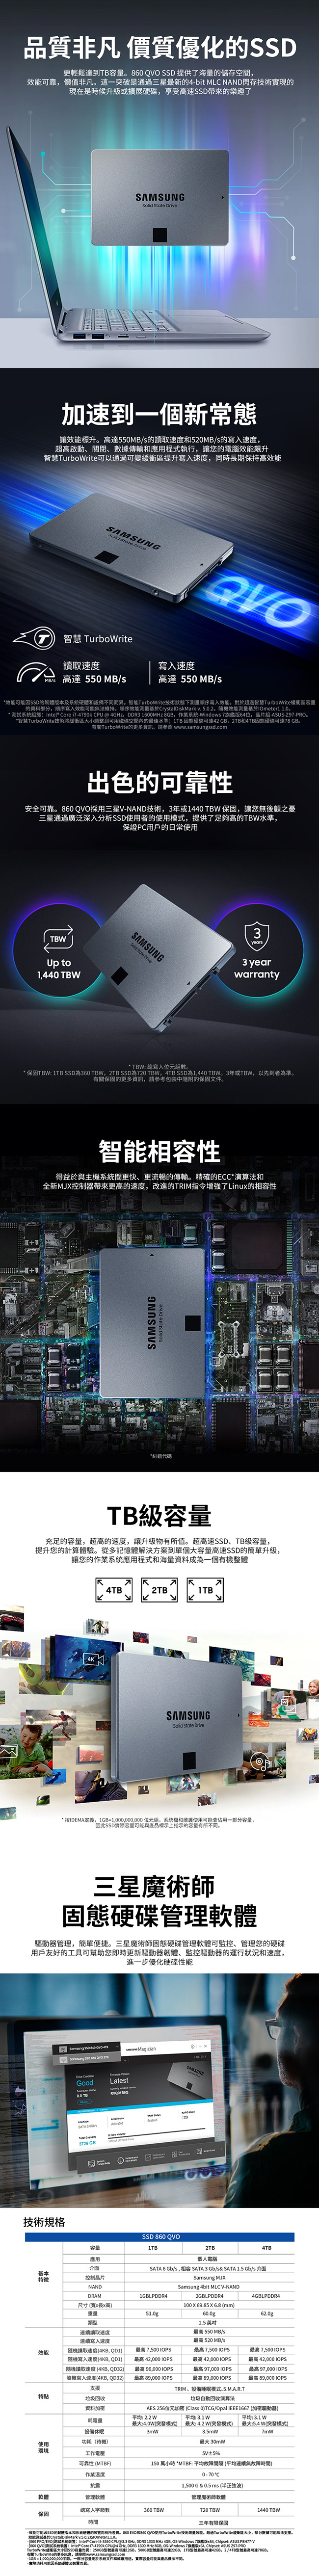 Samsung三星 860 QVO 4TB SSD固態硬碟